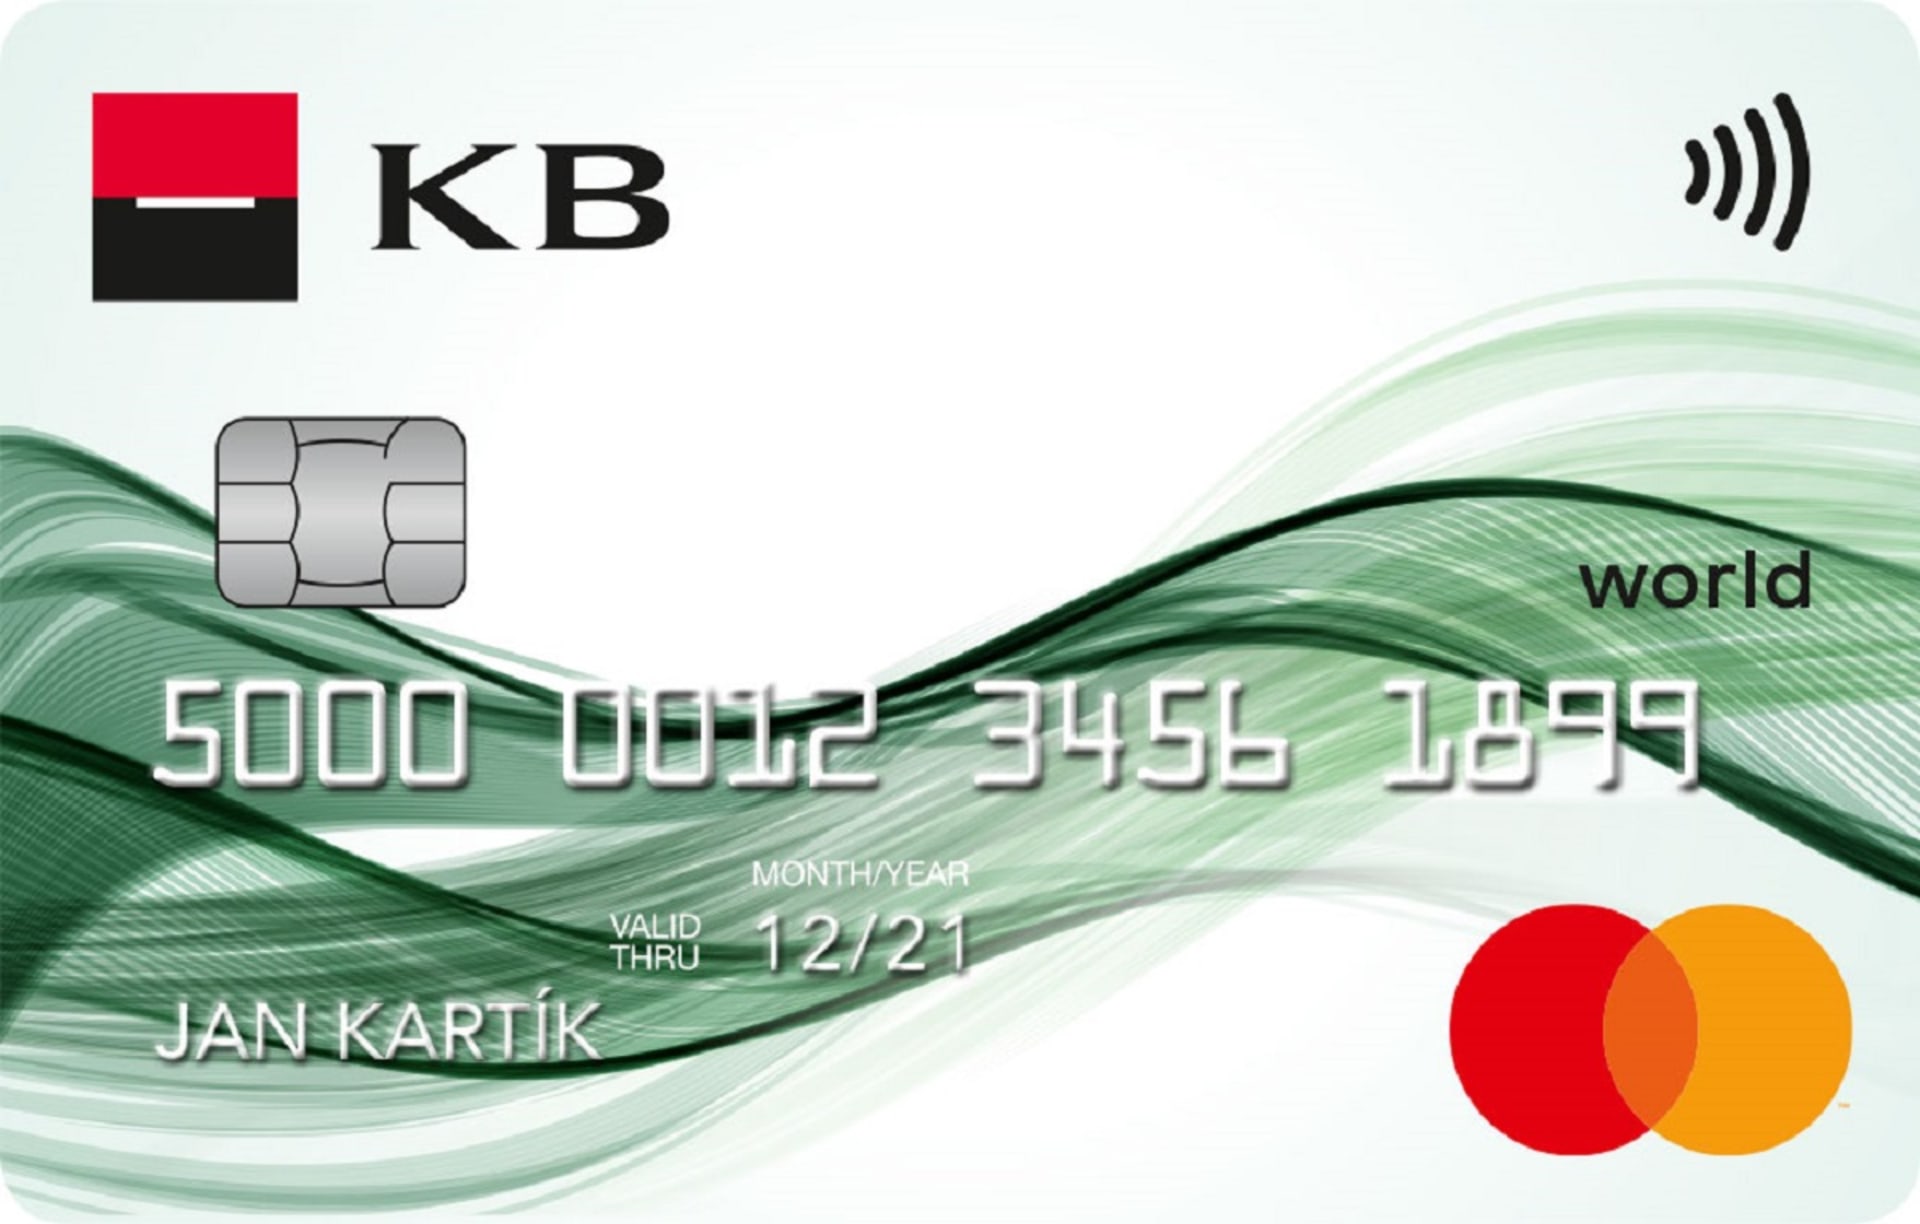 KB 4U kreditní karta